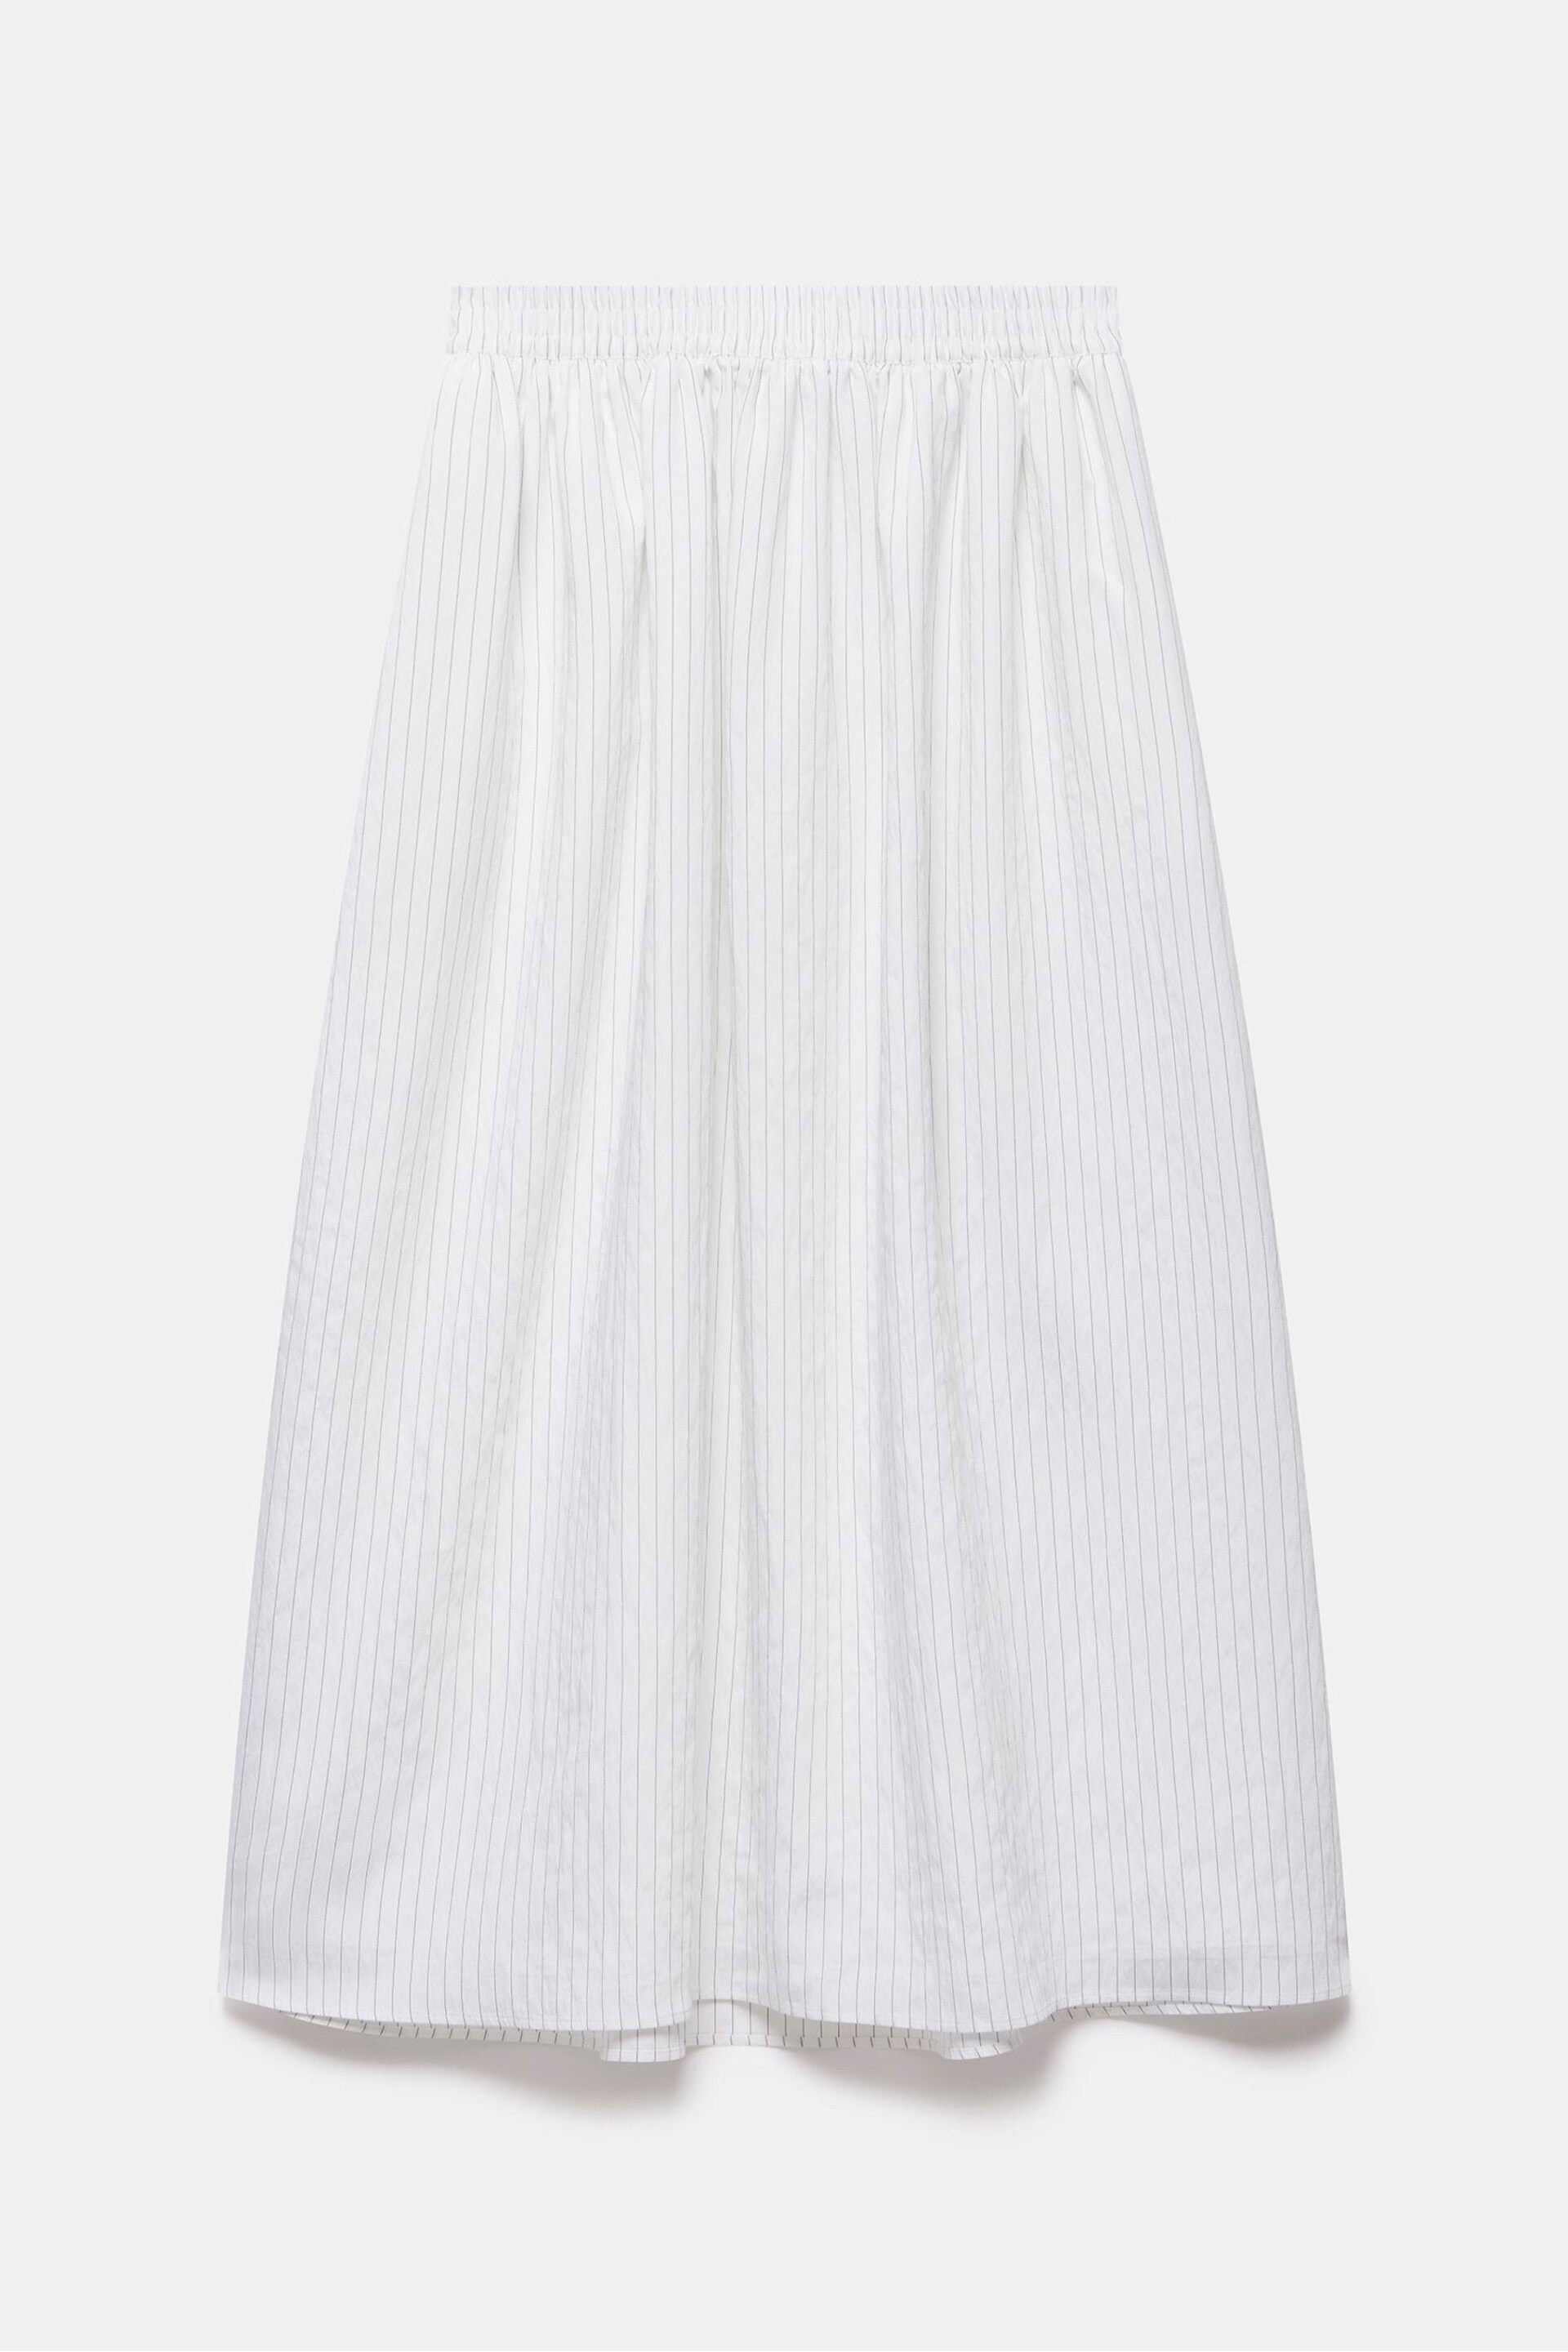 Mint Velvet White Striped Maxi Skirt - Image 3 of 4